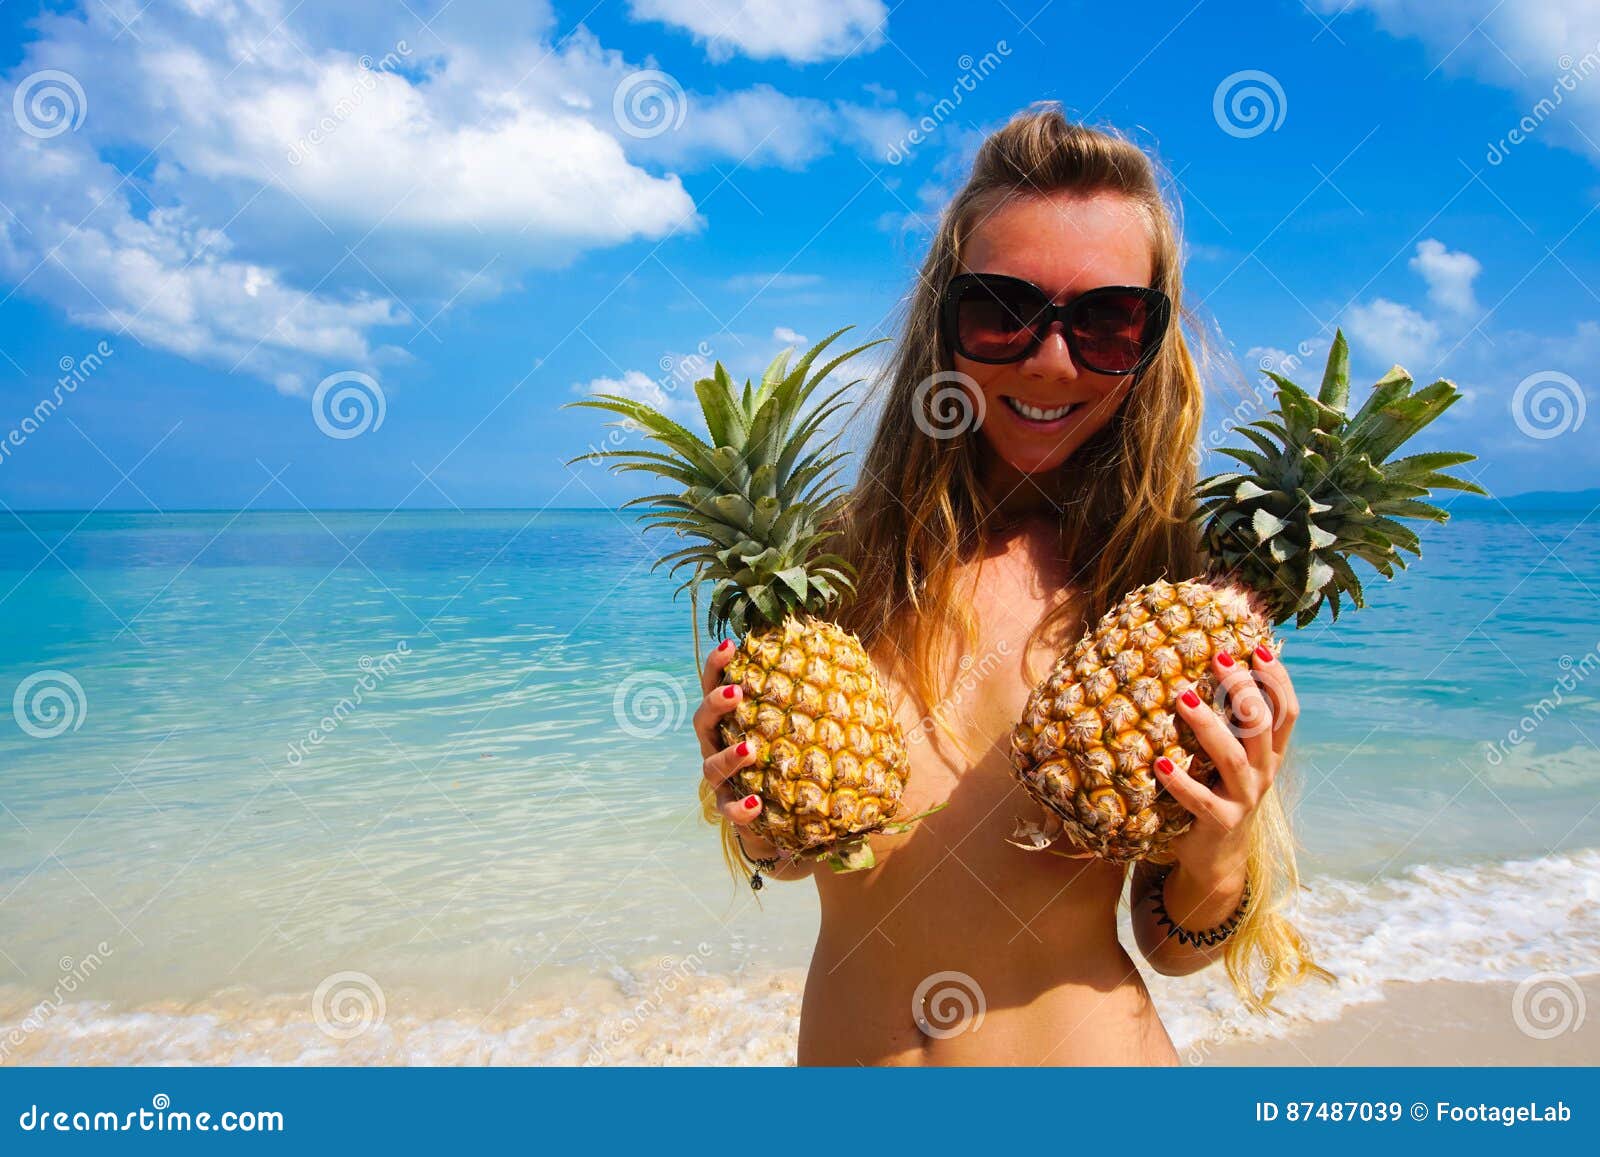 portret-van-sexy-meisje-met-ananassen-met-tropische-overzees-bij-achtergrond-de-stijl-van-de-strandpartij-87487039.jpg